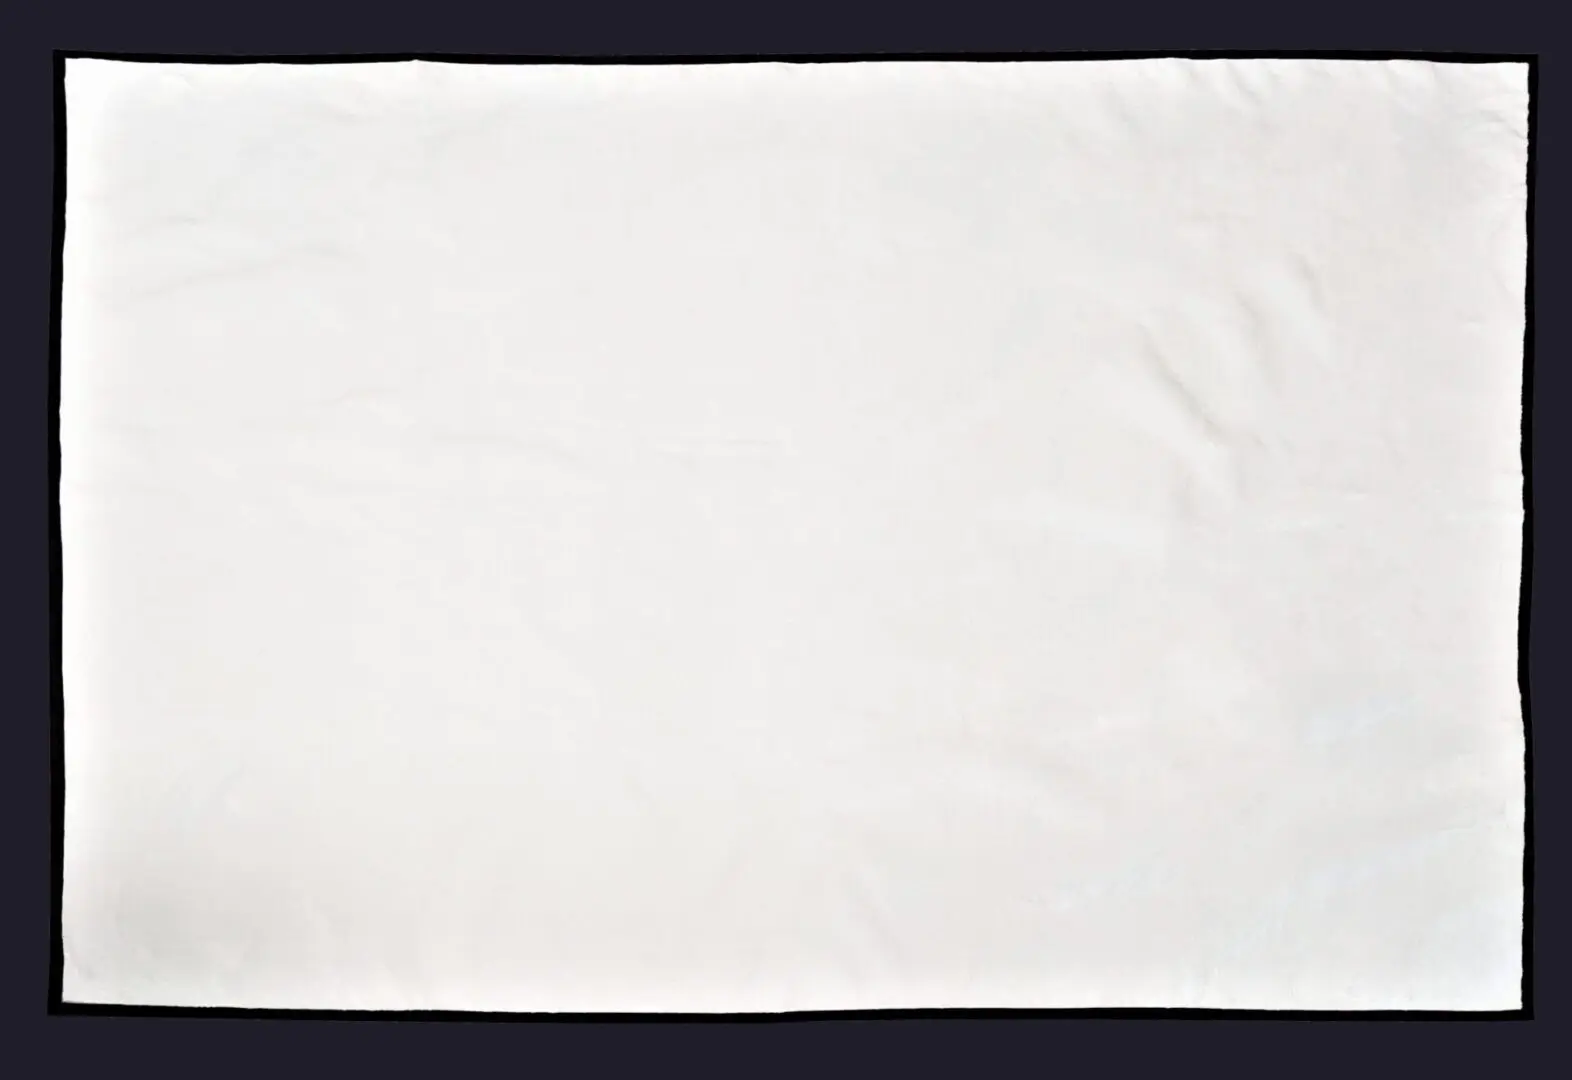 A white colored cotton picnic blanket